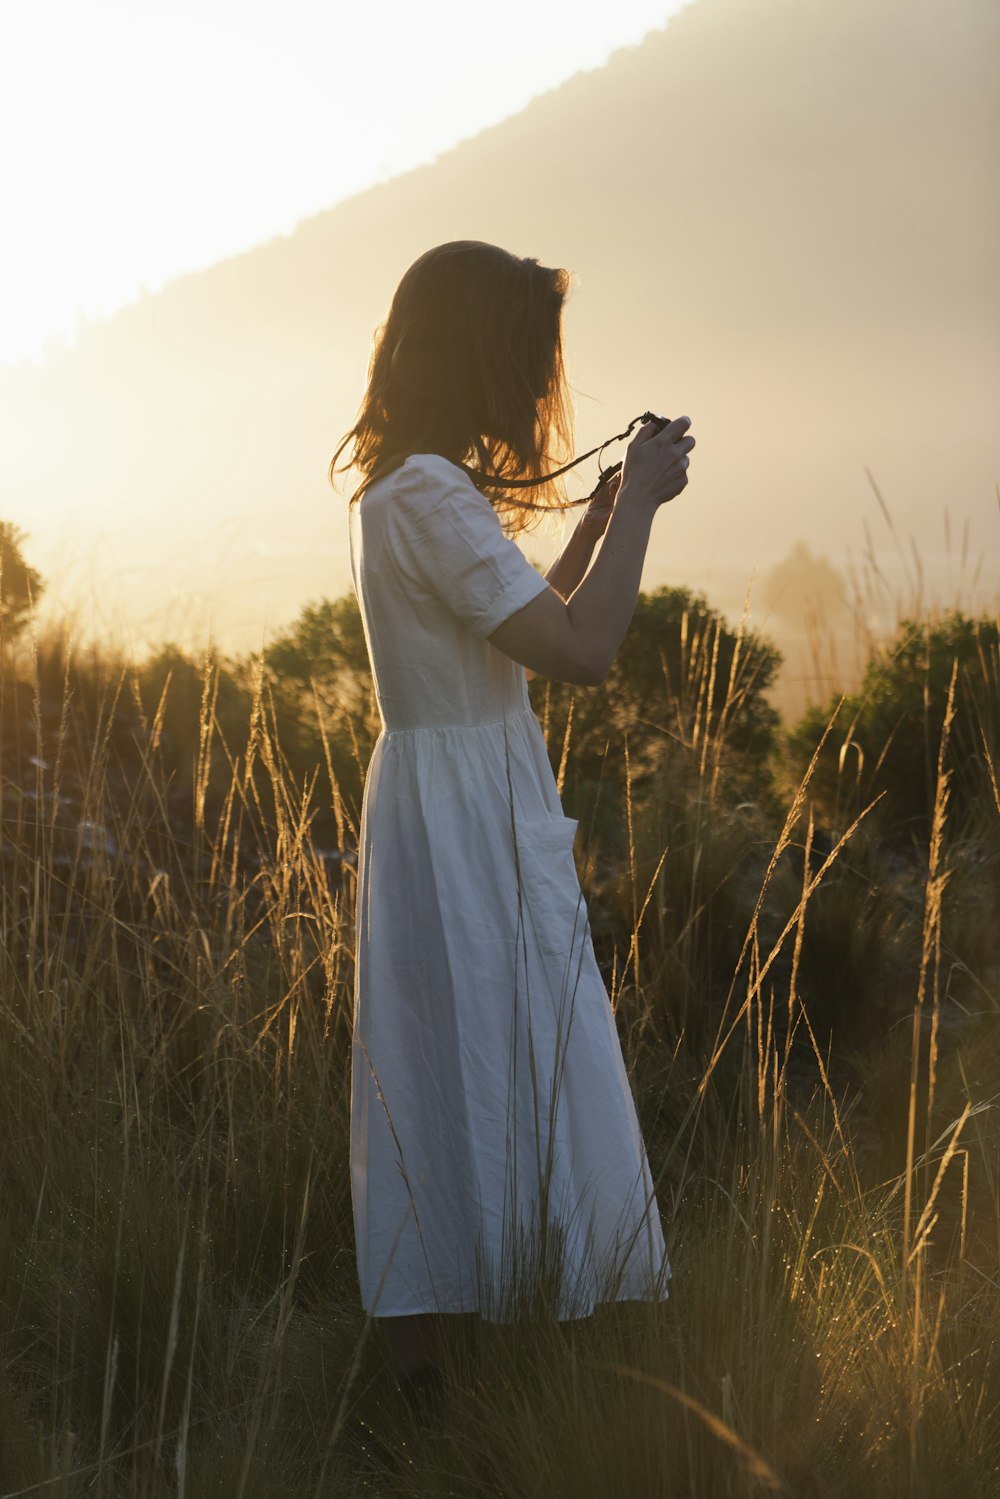 Frau im weißen Kleid mit Kamera steht während des Sonnenuntergangs auf grünem Grasfeld